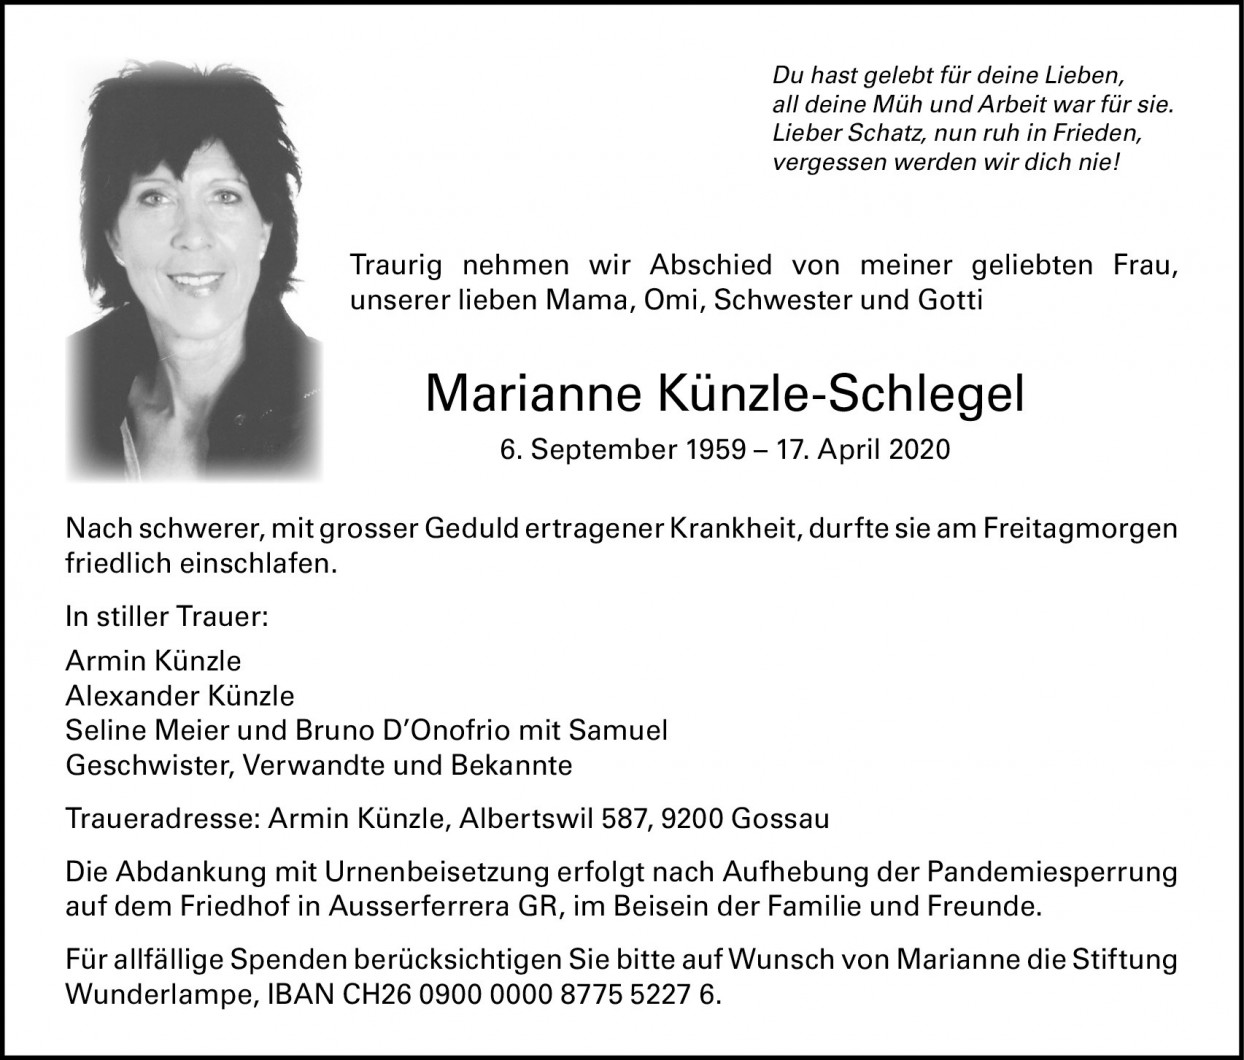 Marianne Künzle-Schlegel